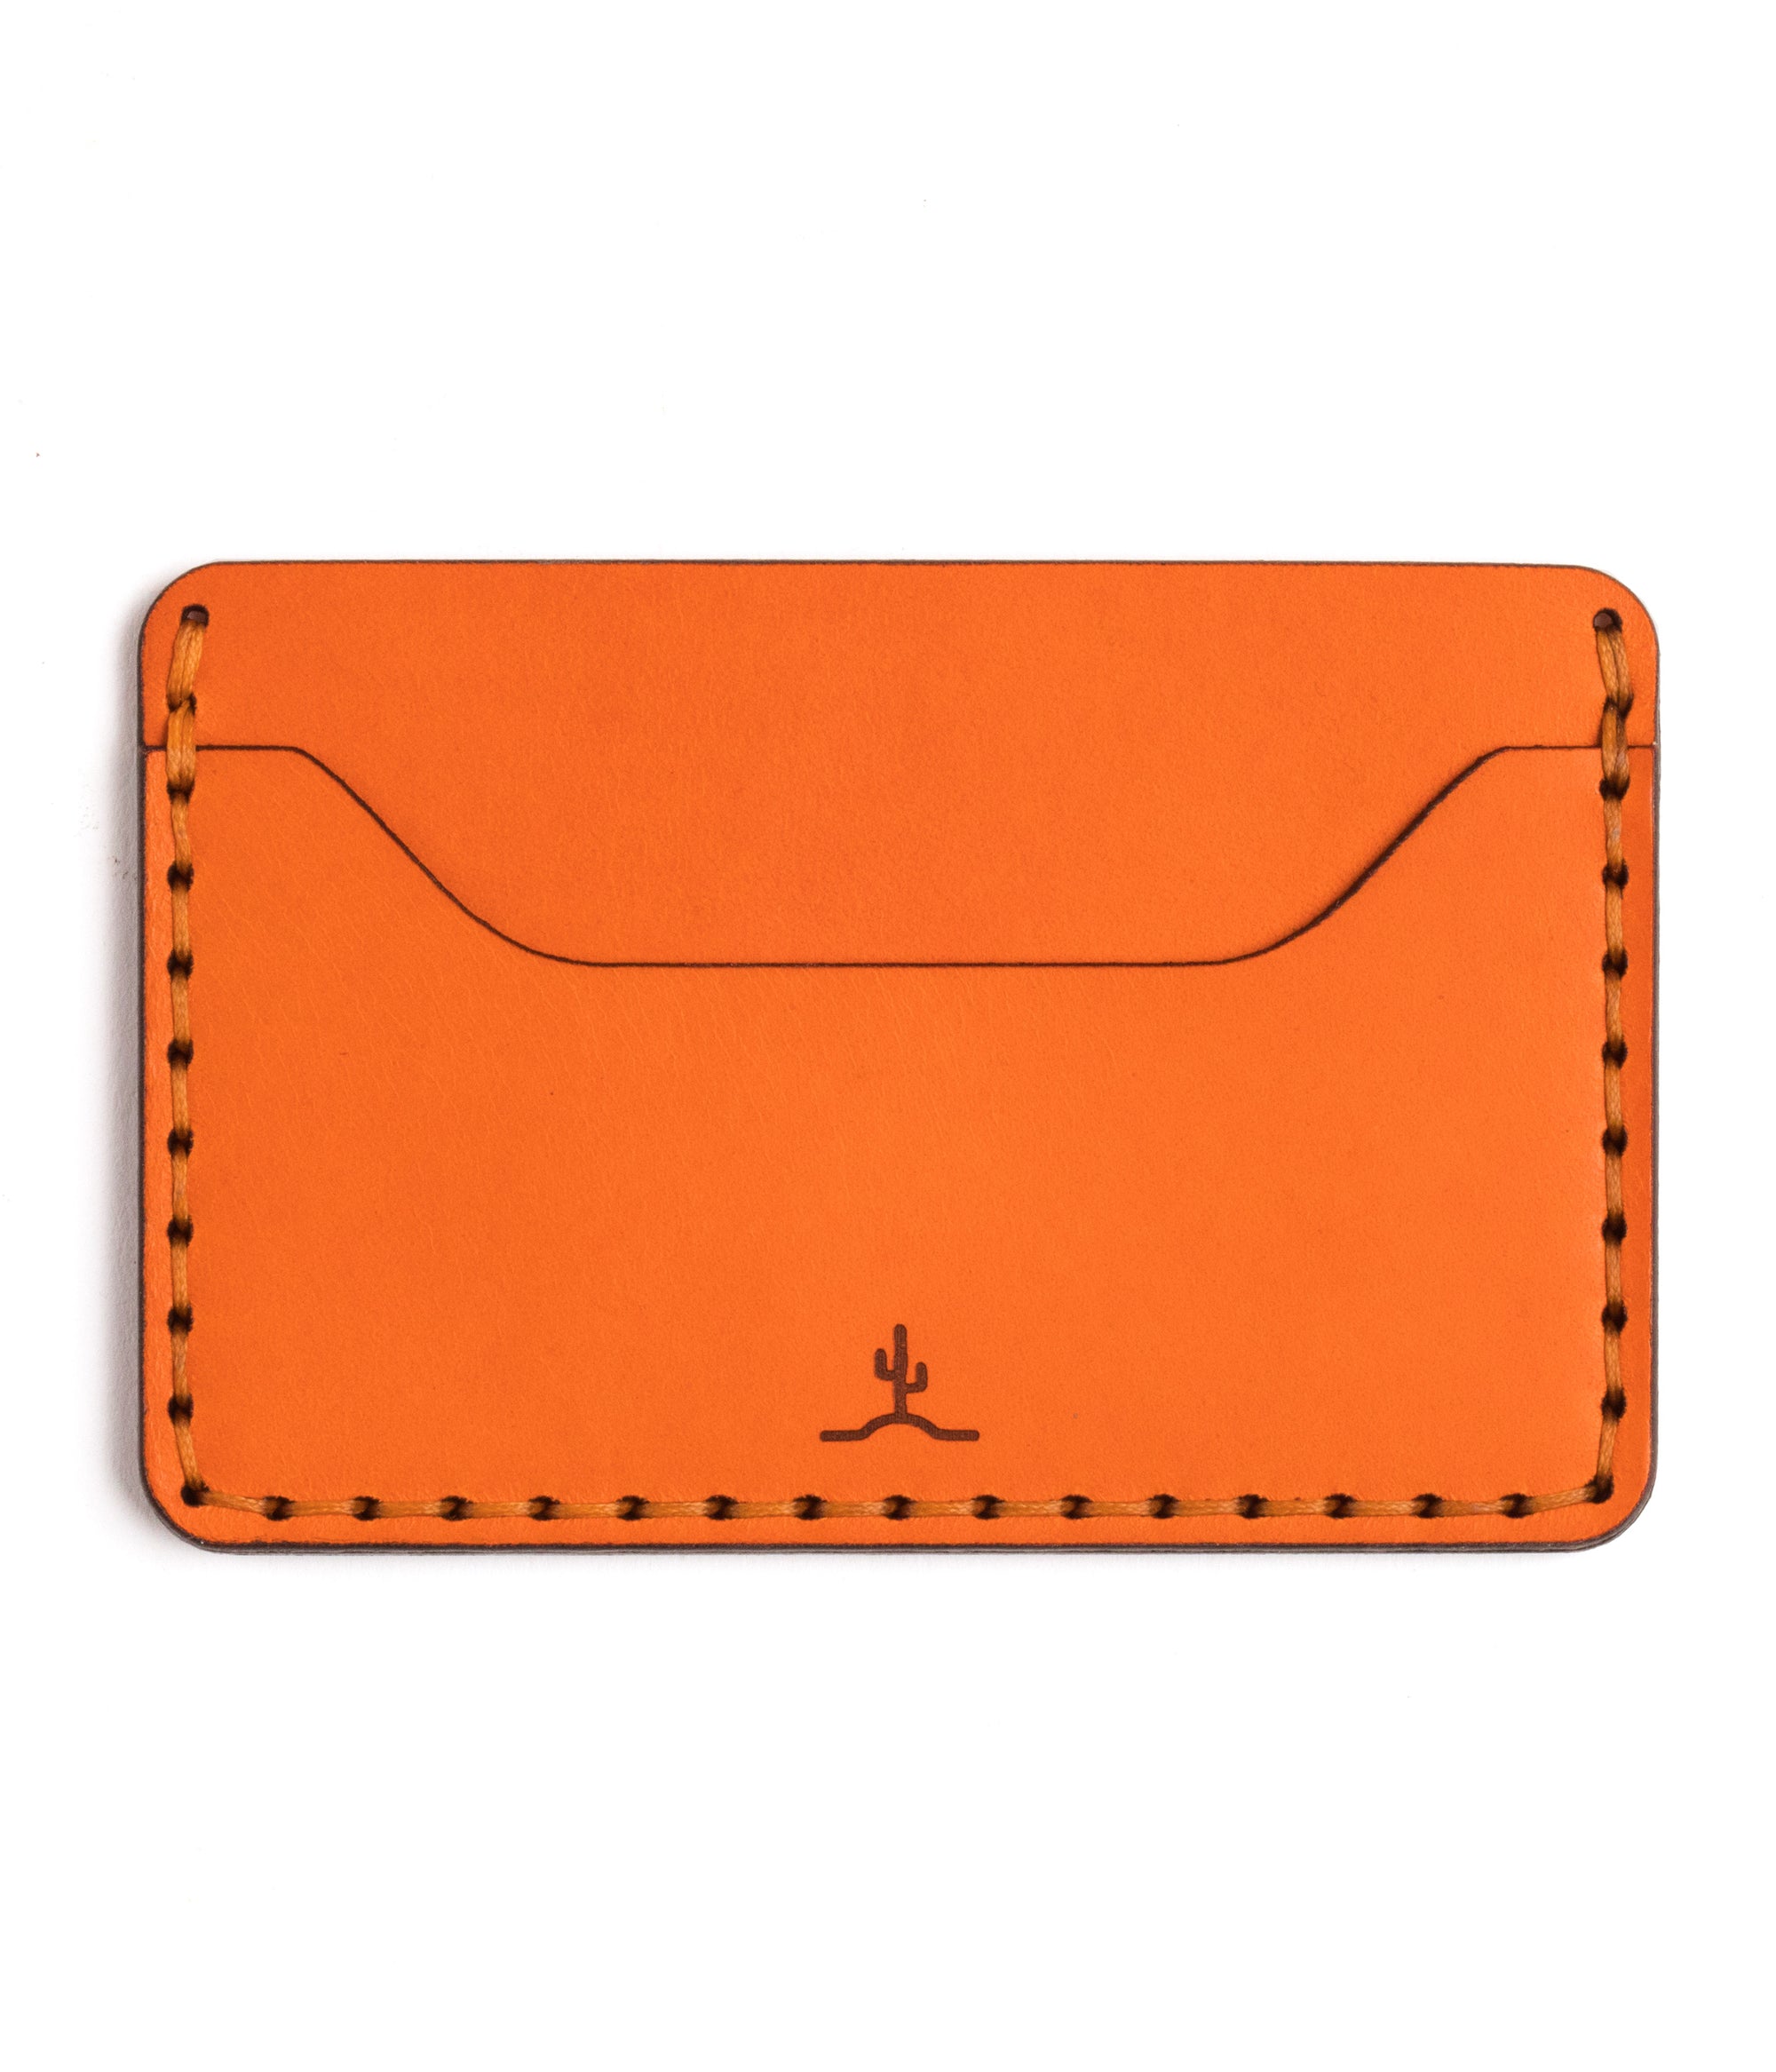 two pocket slim orange leather wallet